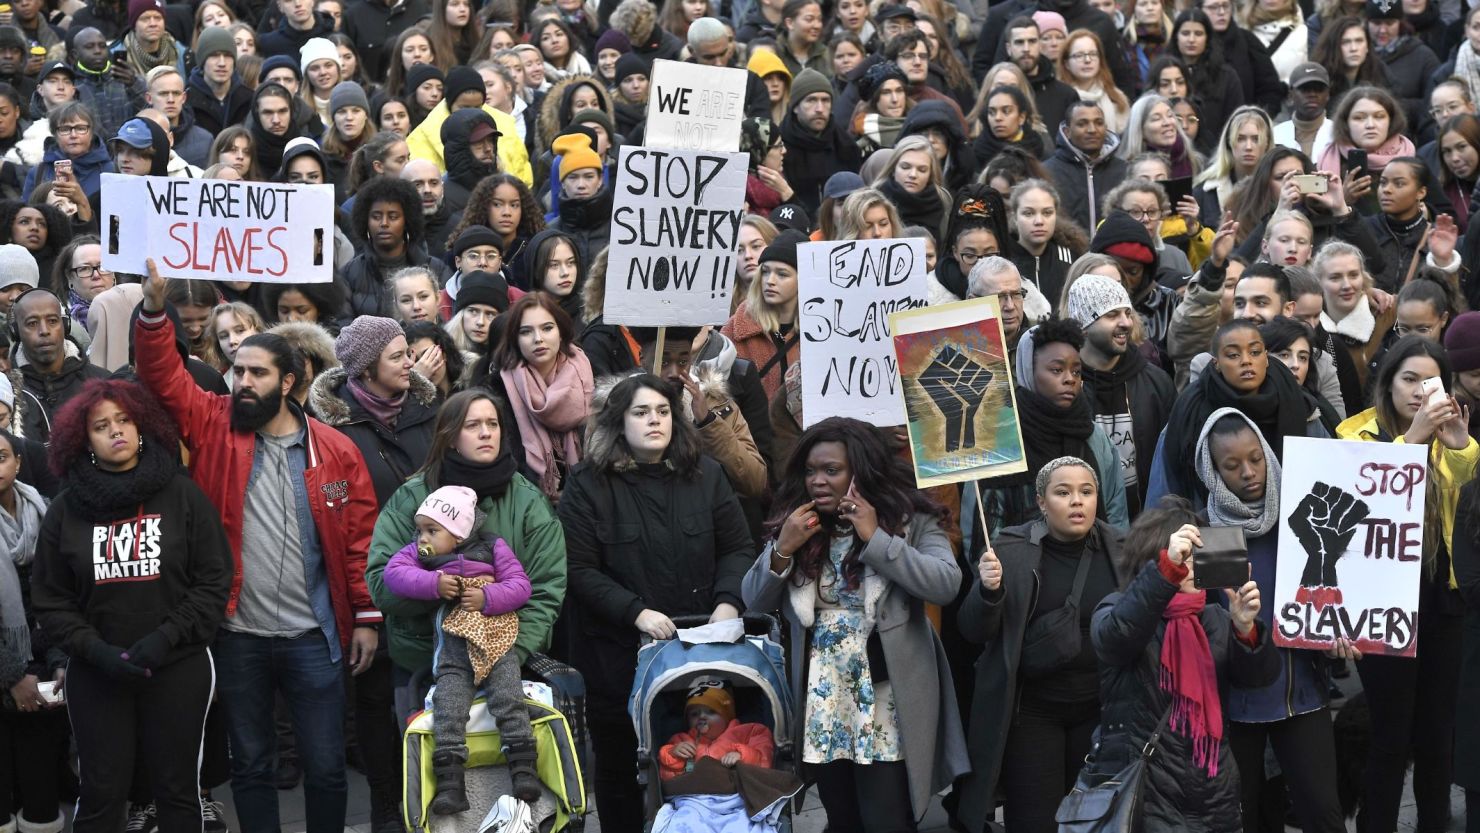 Protestors attend a demonstration against slavery, in Stockholm, Sweden, on November 25, 2017.